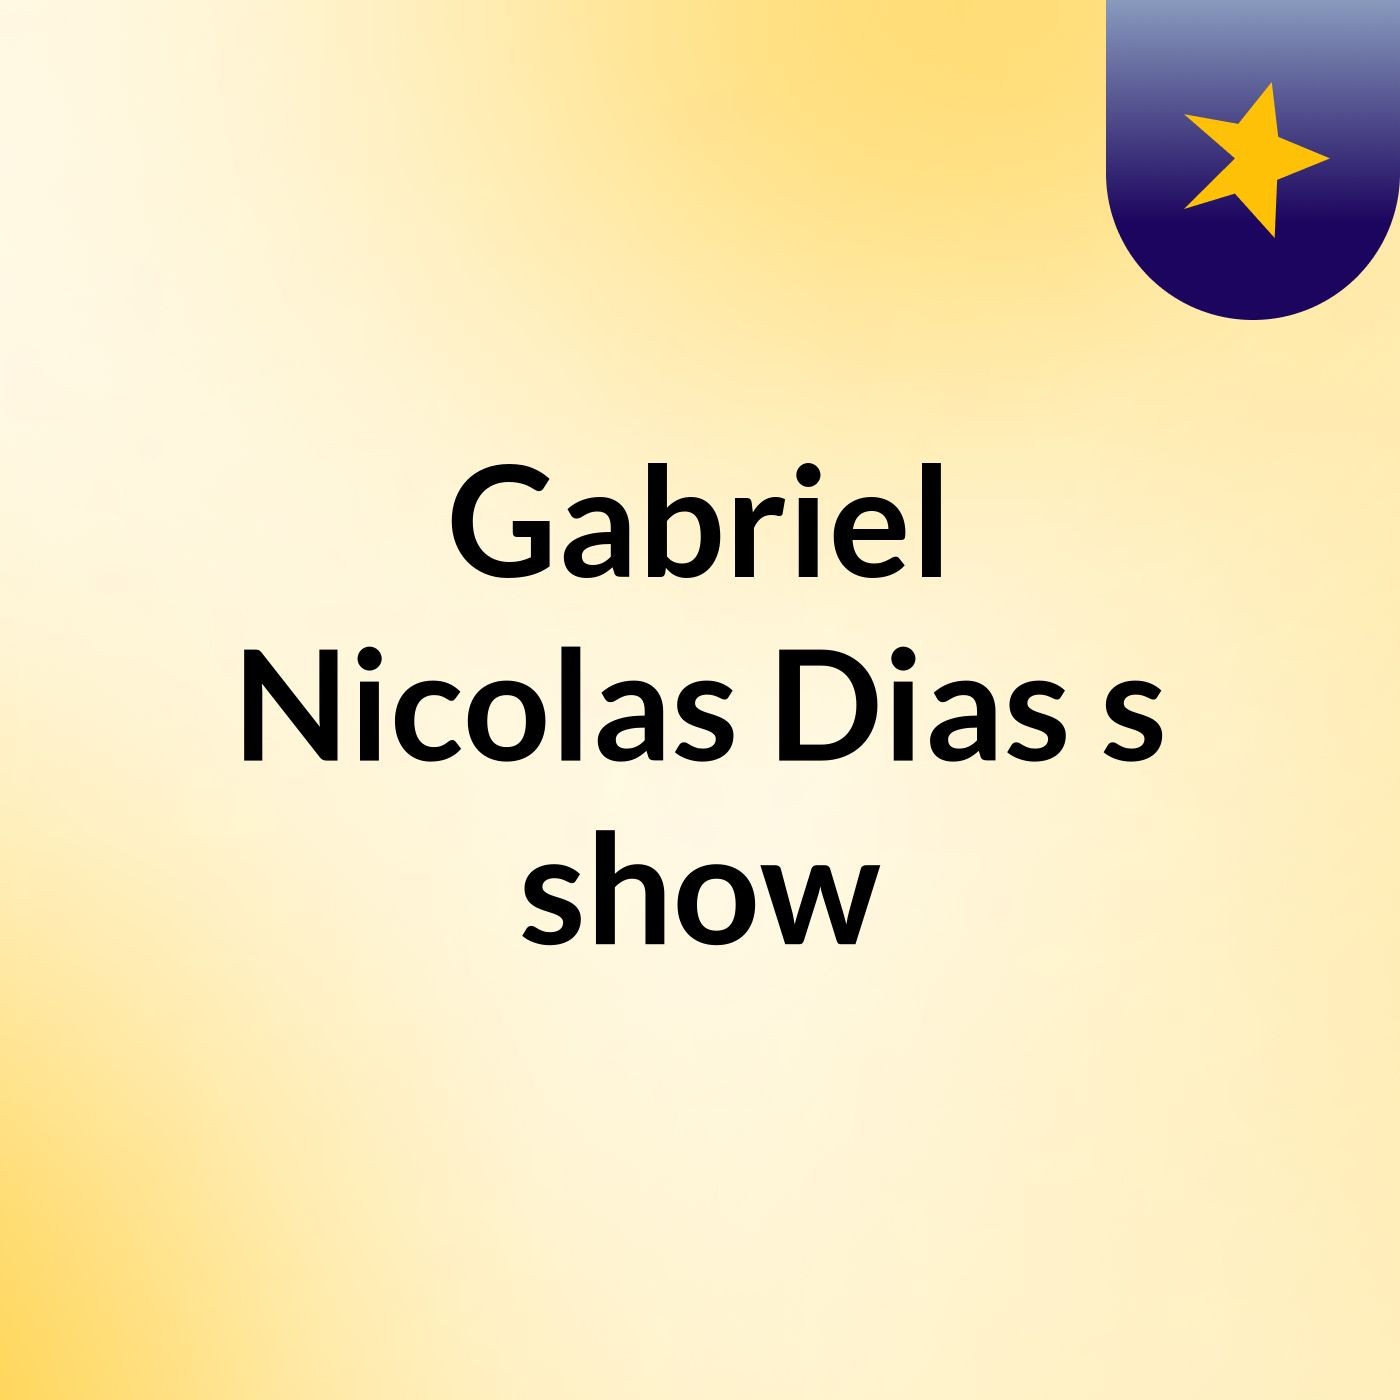 Gabriel Nicolas Dias's show